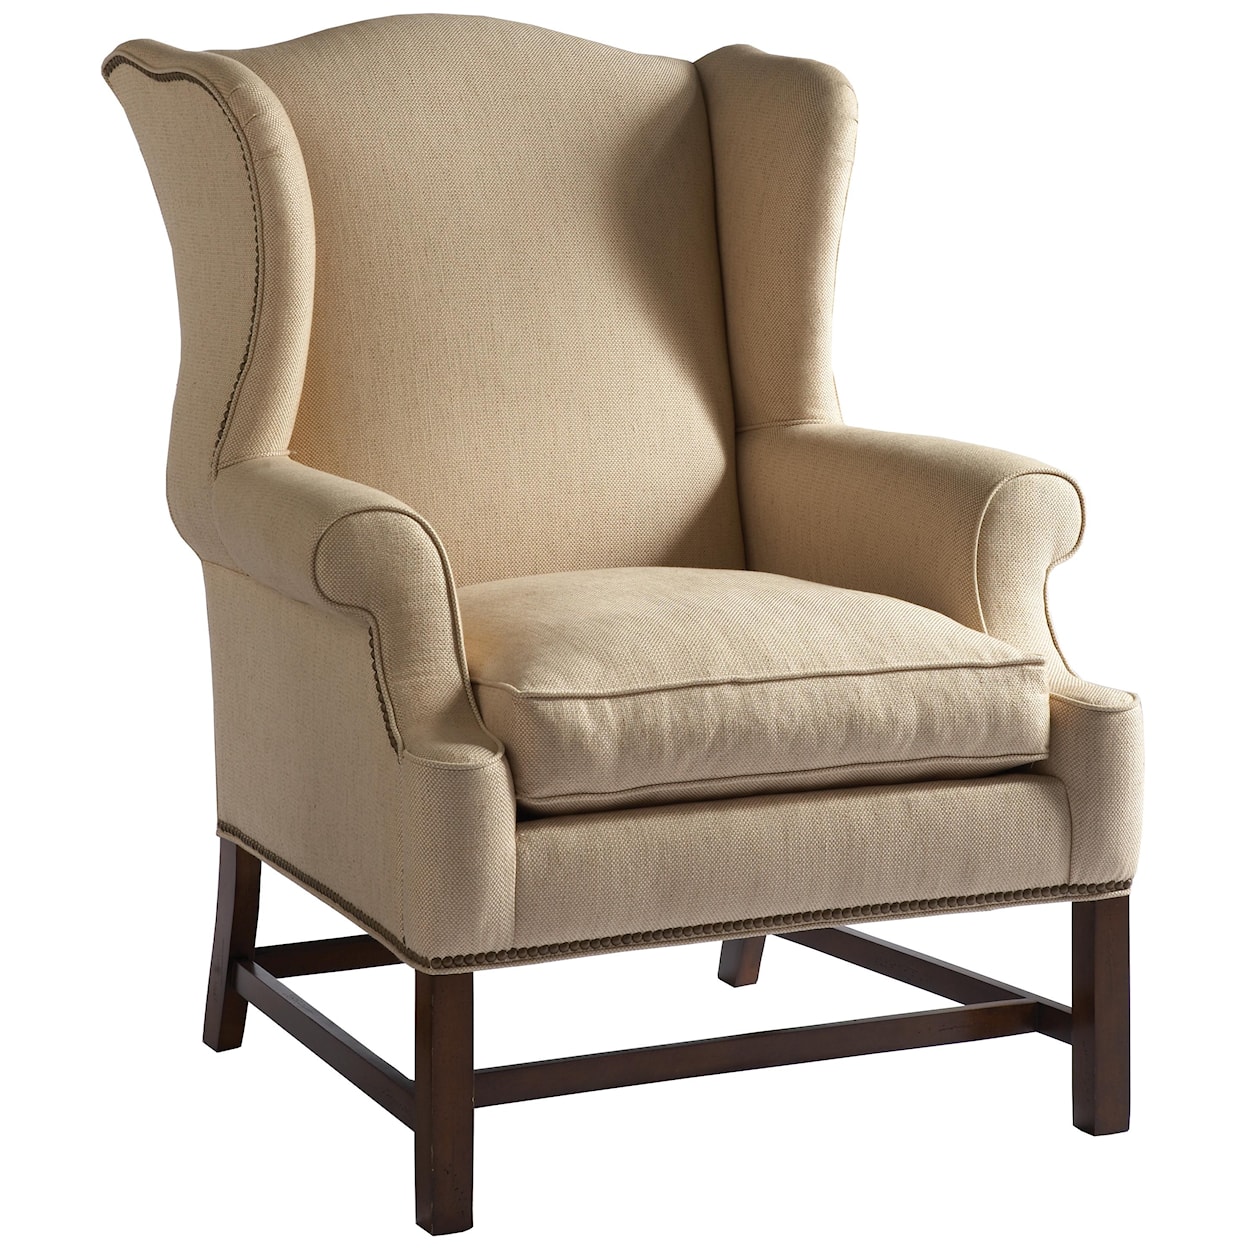 Lillian August Custom Upholstery Gordon Chair